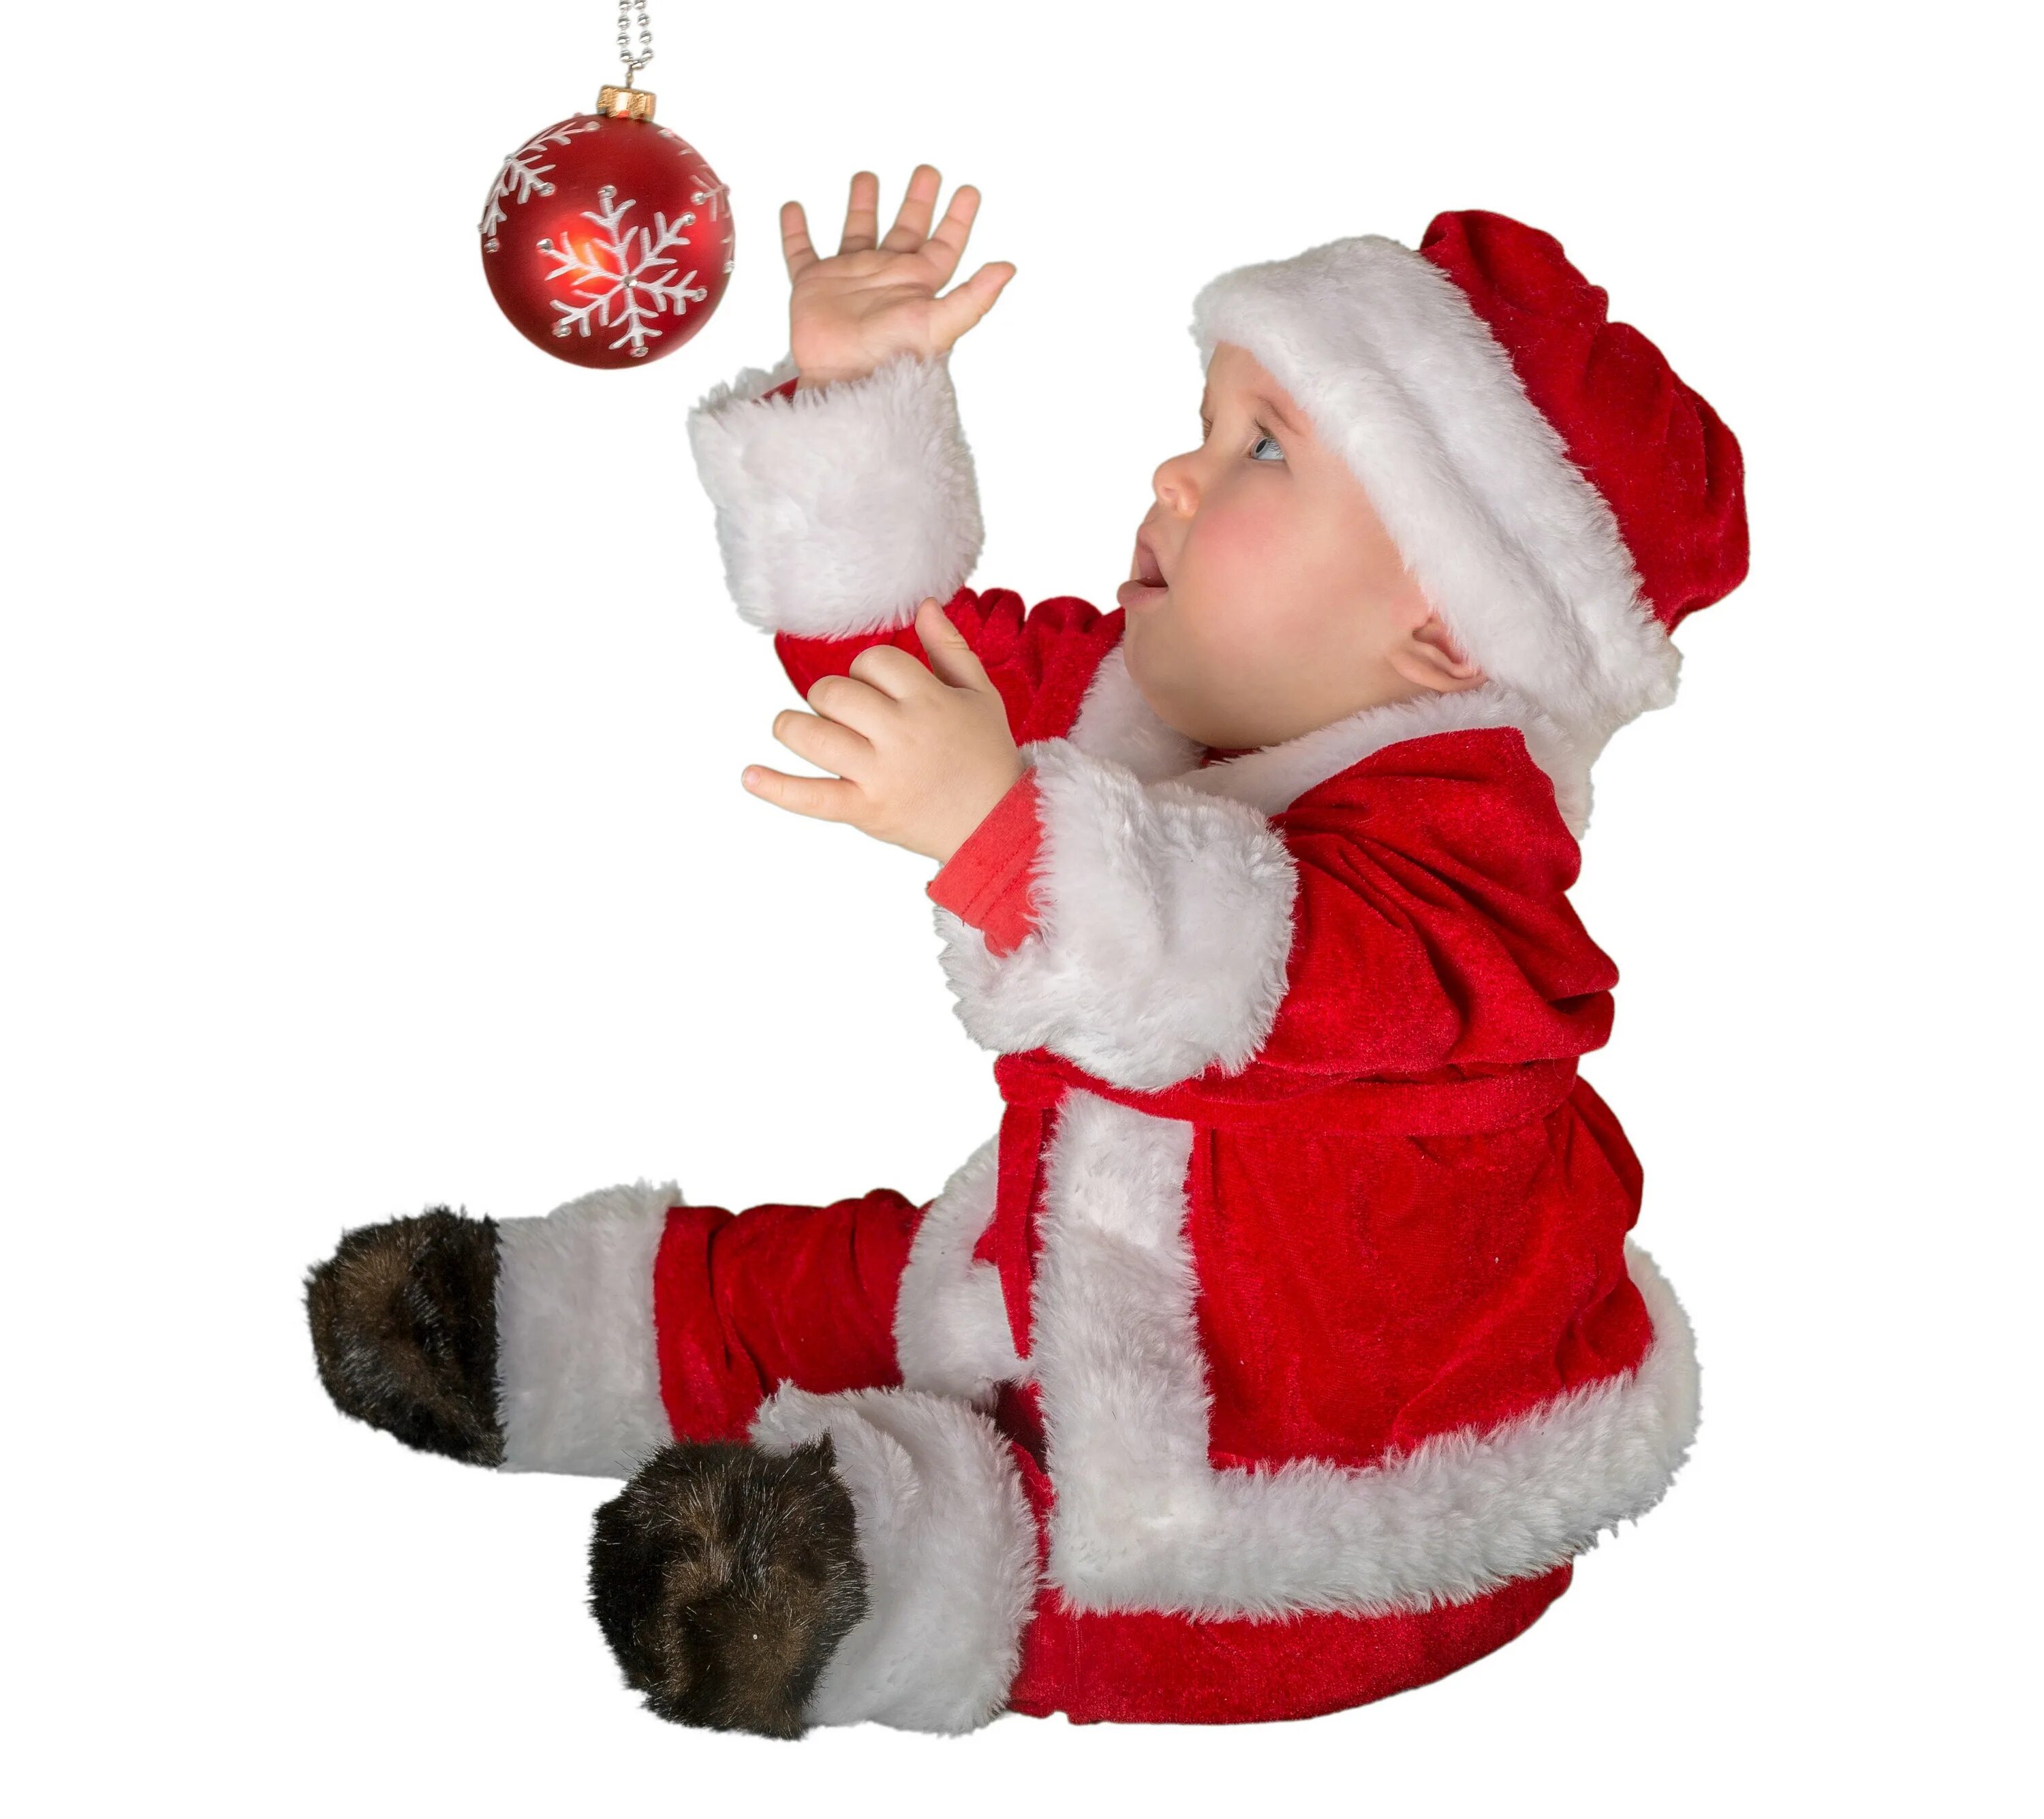 Малыши дед мороз. Дед Мороз на белом фоне. Костюм Деда Мороза на ребенка. Малыш в костюме Деда Мороза. Ребенок в новогоднем колпаке на белом фоне.